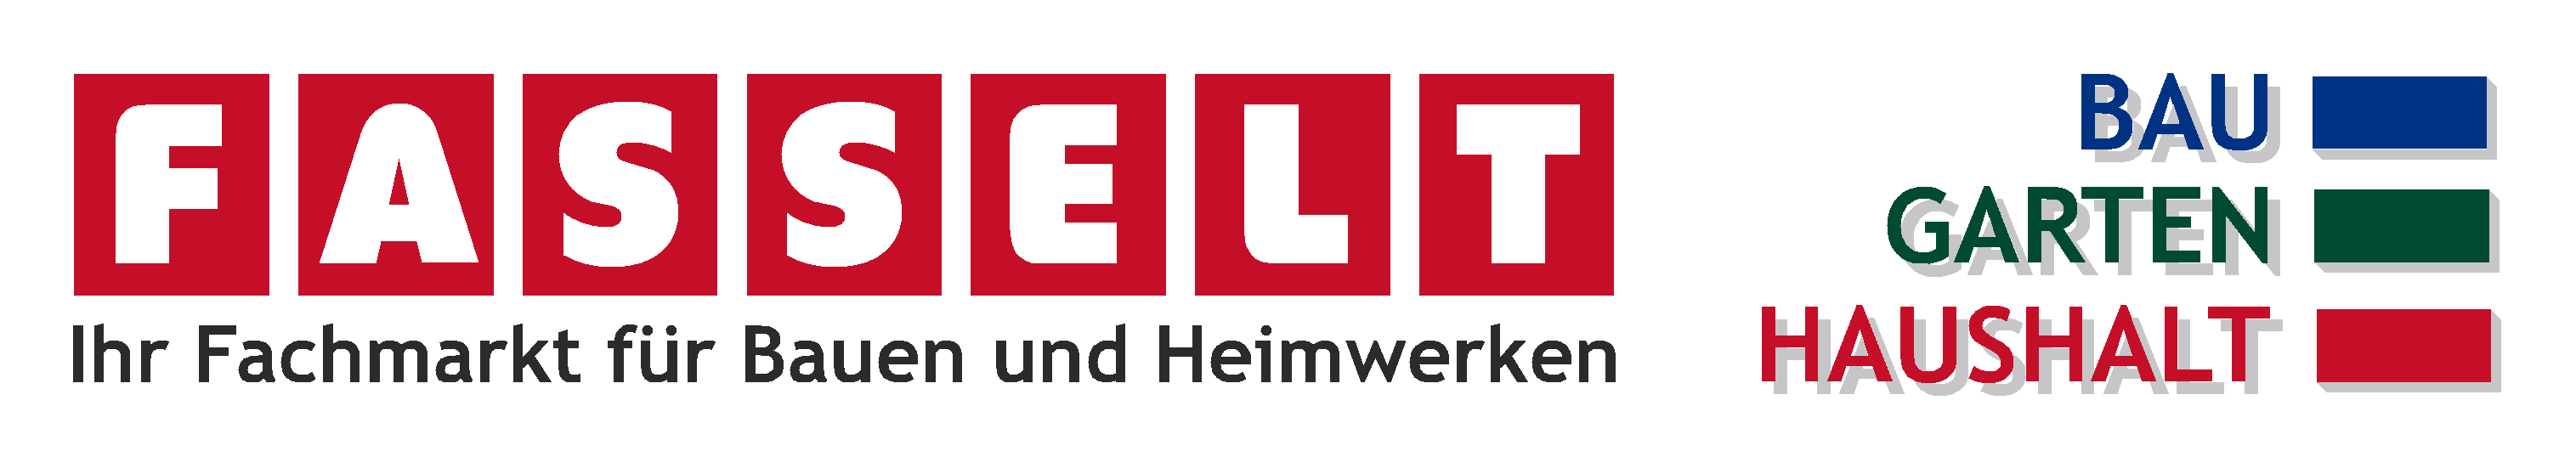 Bau- und Heimwerkermarkt Fasselt GmbH & Co. KG